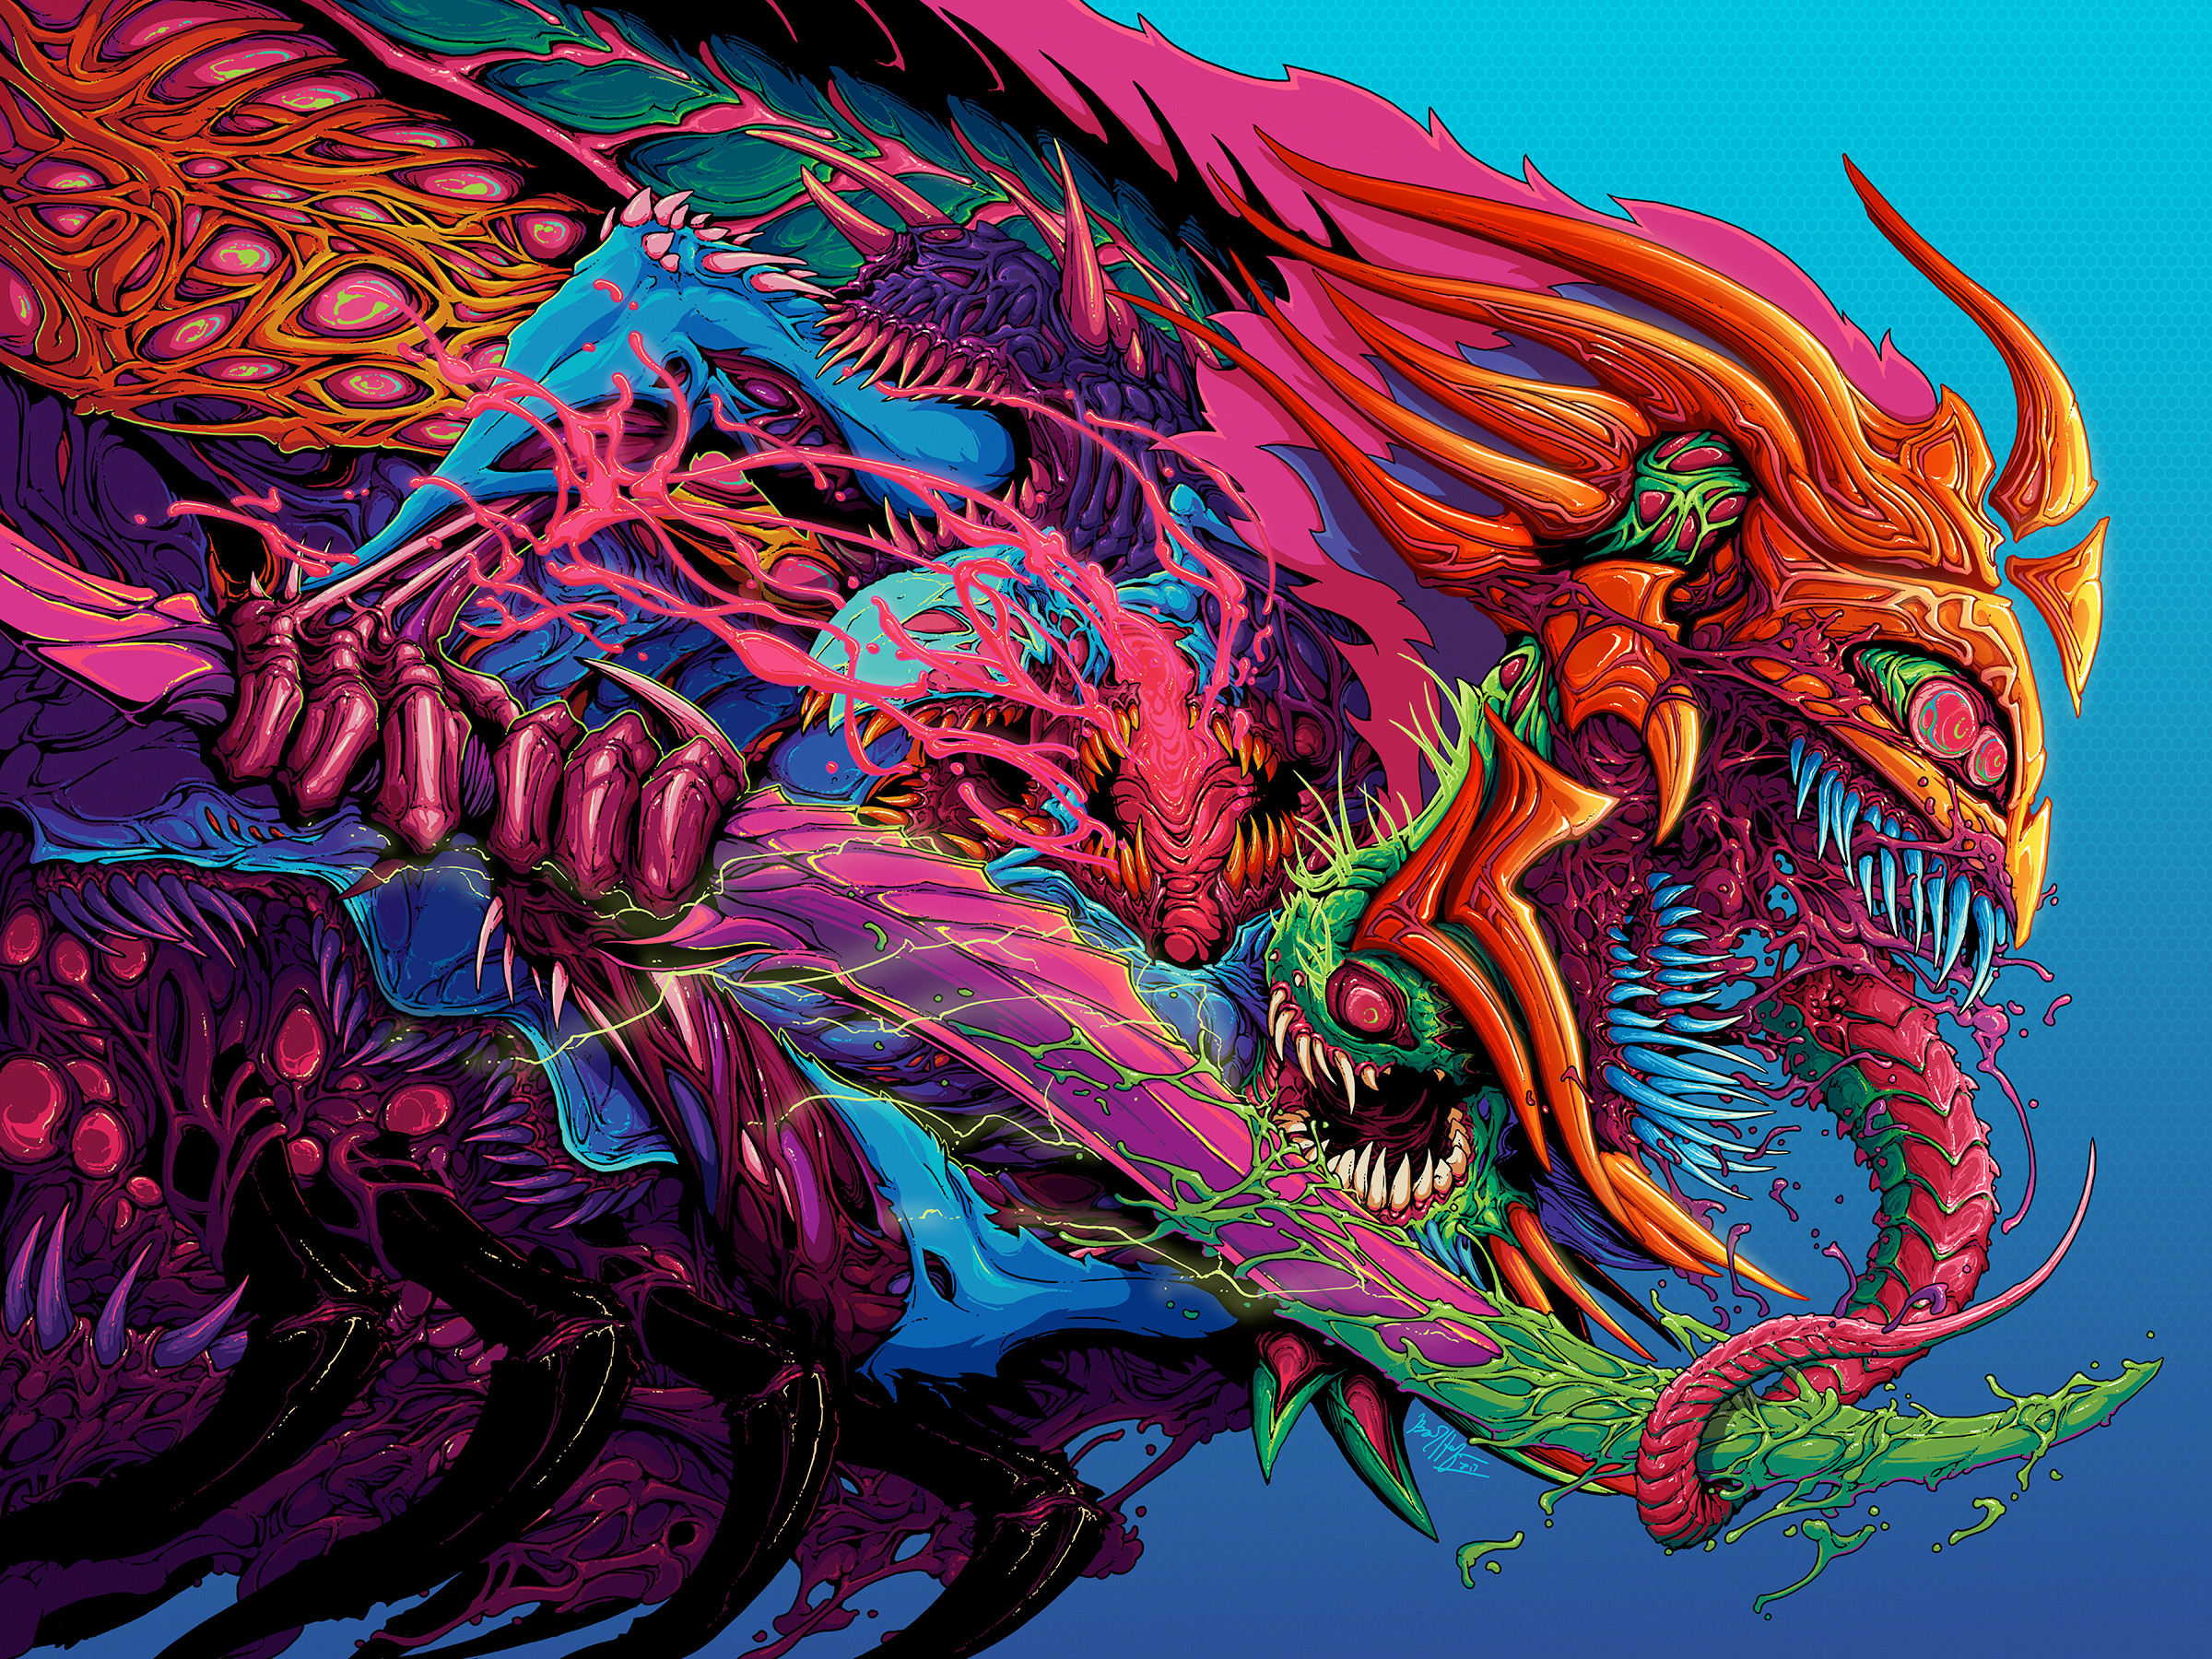 General 2400x1800 digital art artwork horror imagination creature colorful sword